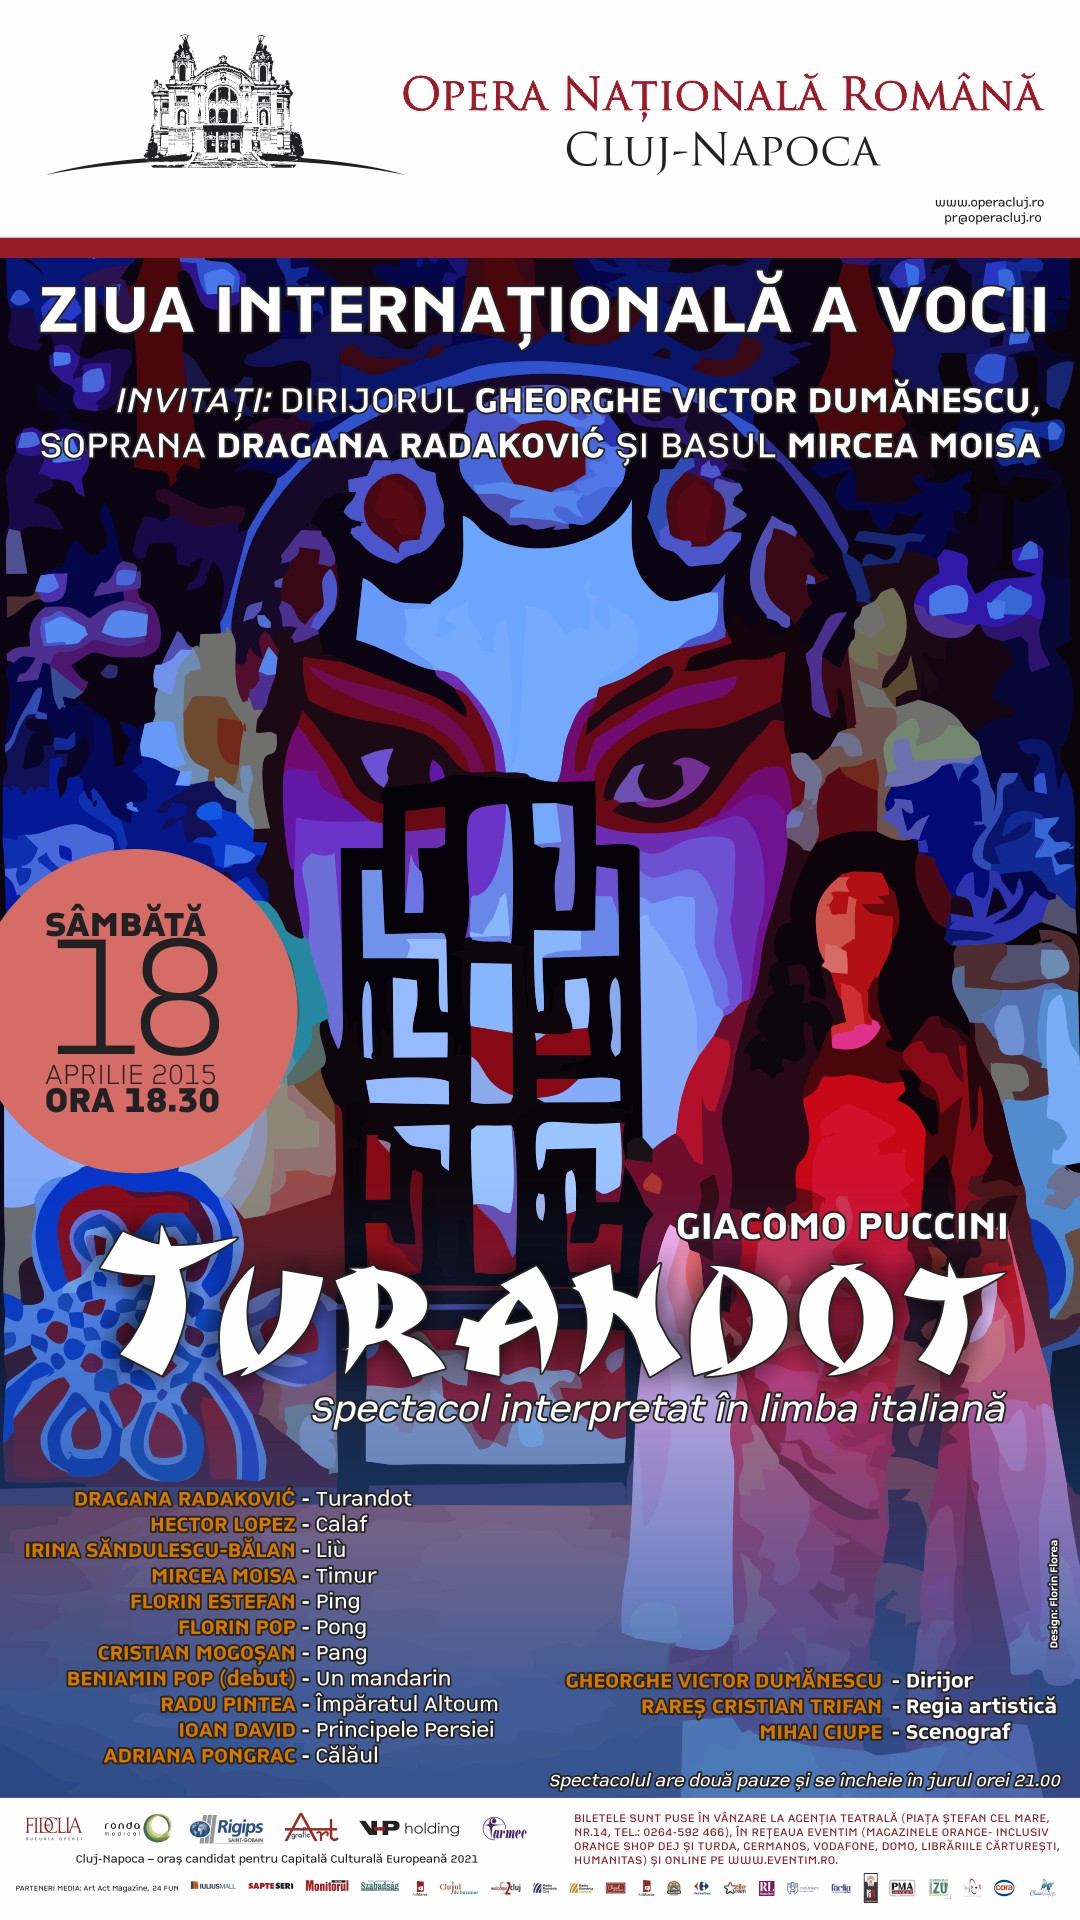 TURANDOT – Spectacol-eveniment, sâmbătă, 18 aprilie 2015